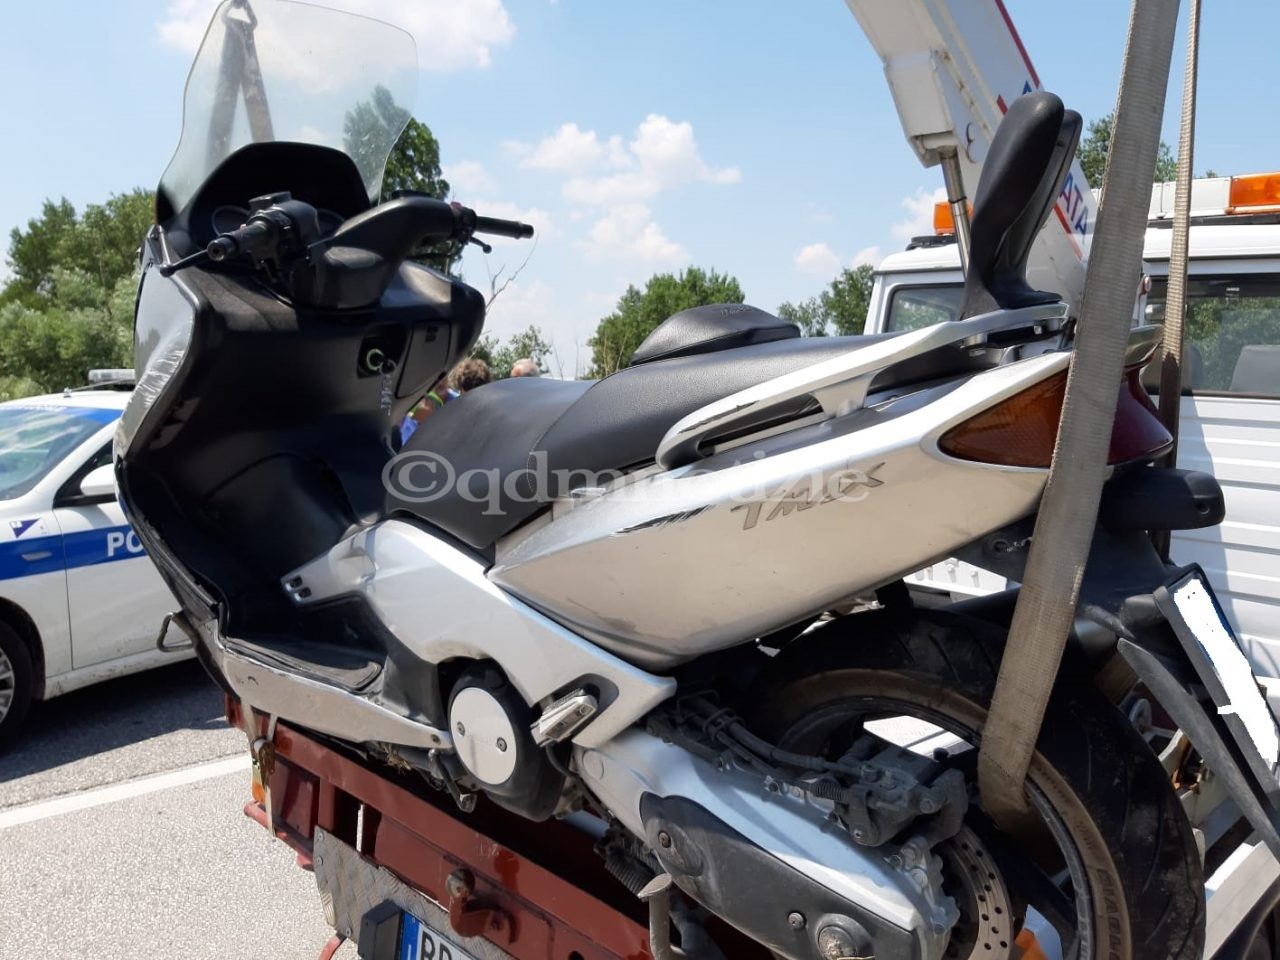 lo scooter dell'incidente di Jesi 20 luglio